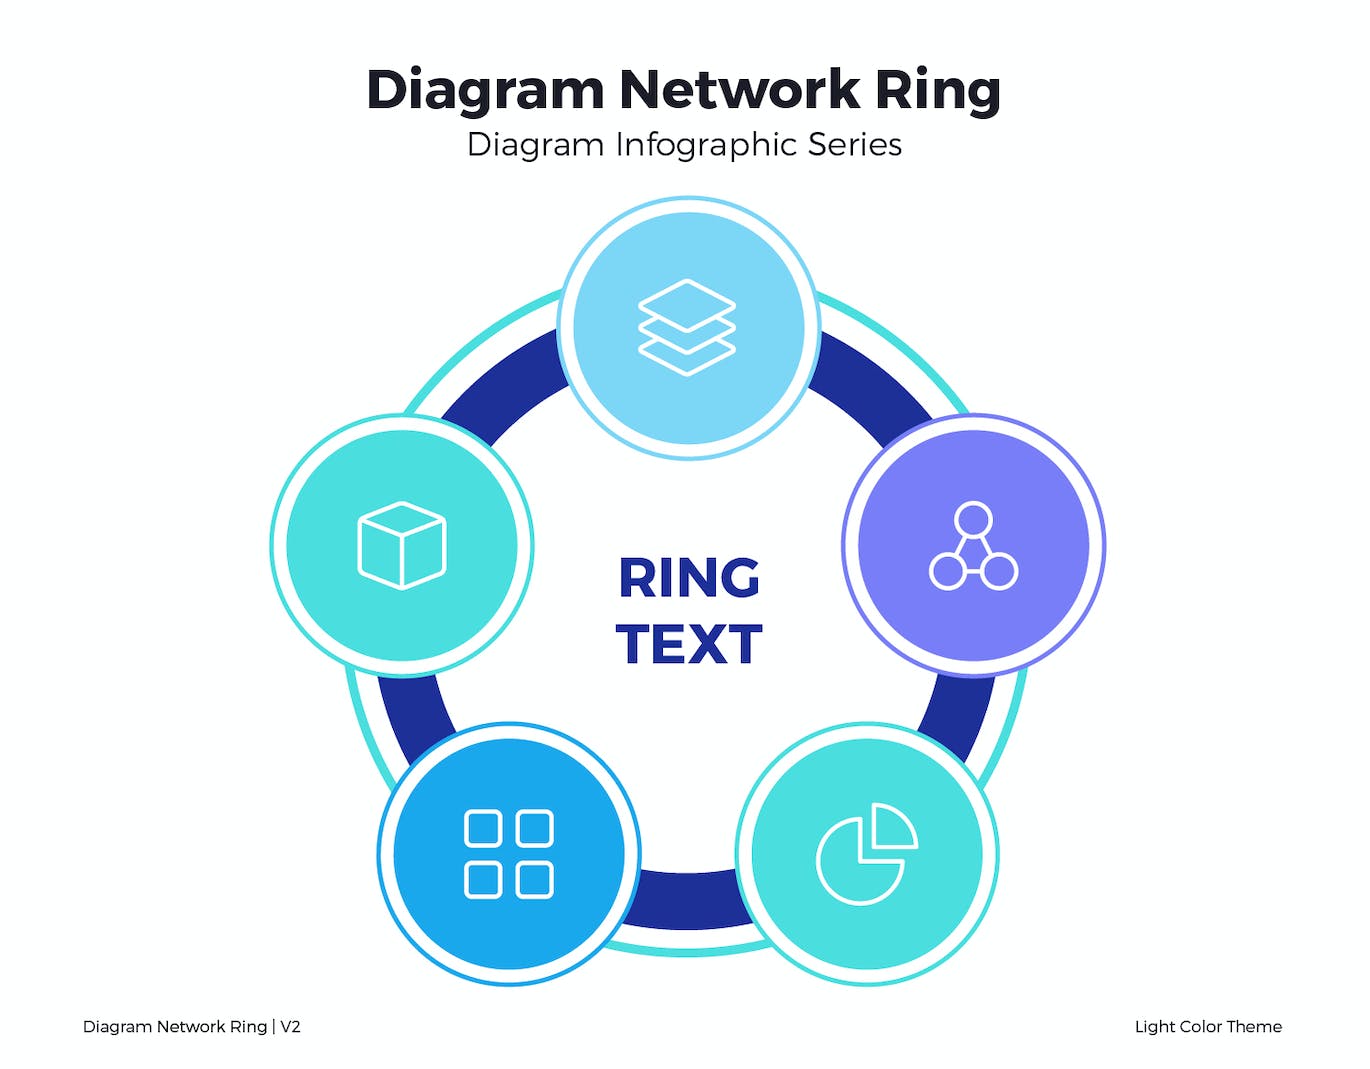 圆形圆环图表矢量素材v2 Diagram Network Ring V2 幻灯图表 第2张